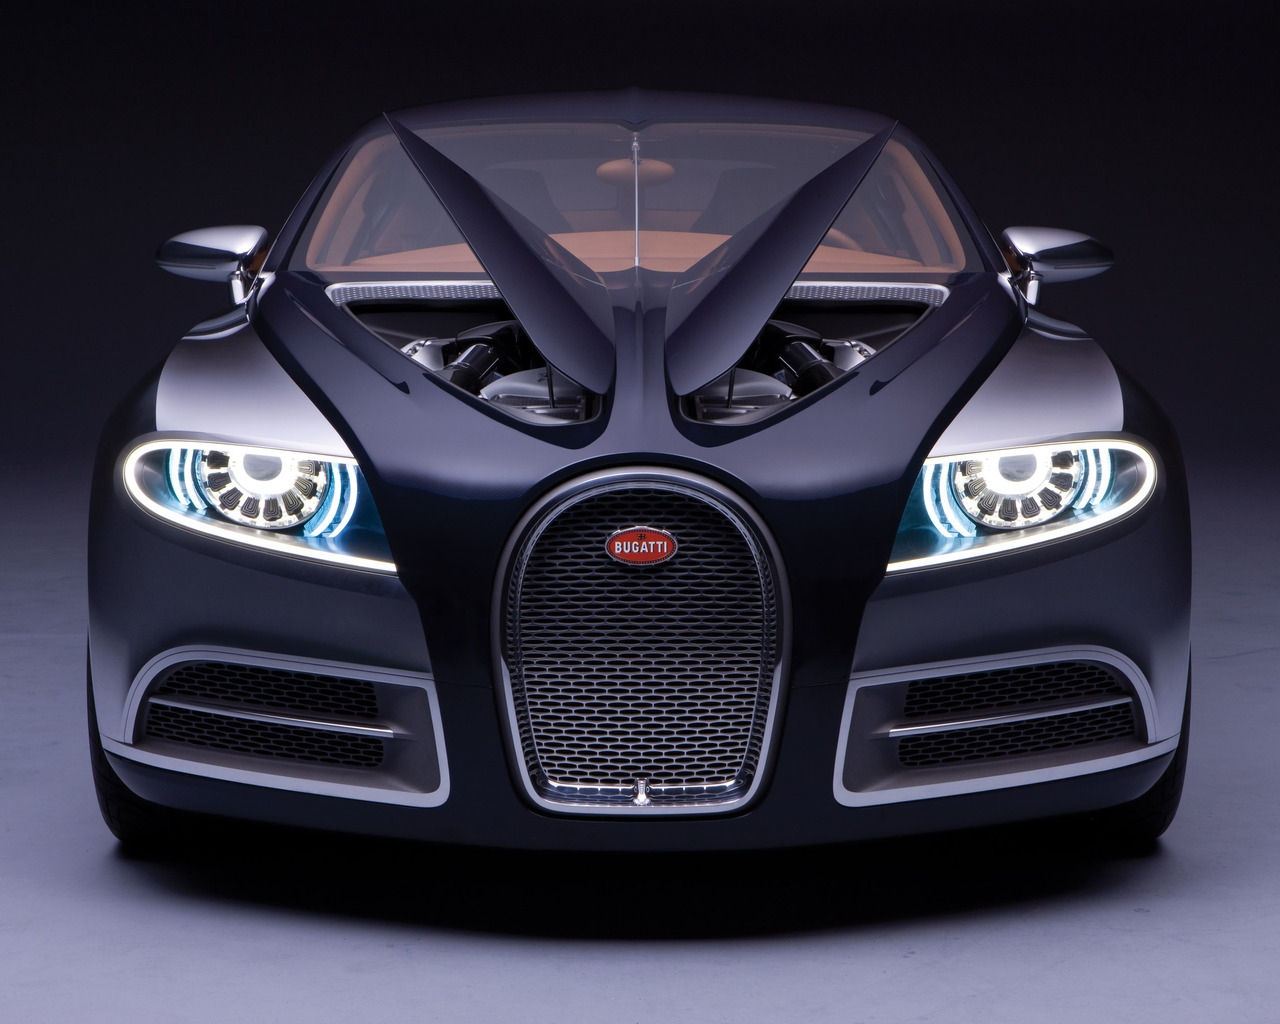 Bugatti for 1280 x 1024 resolution